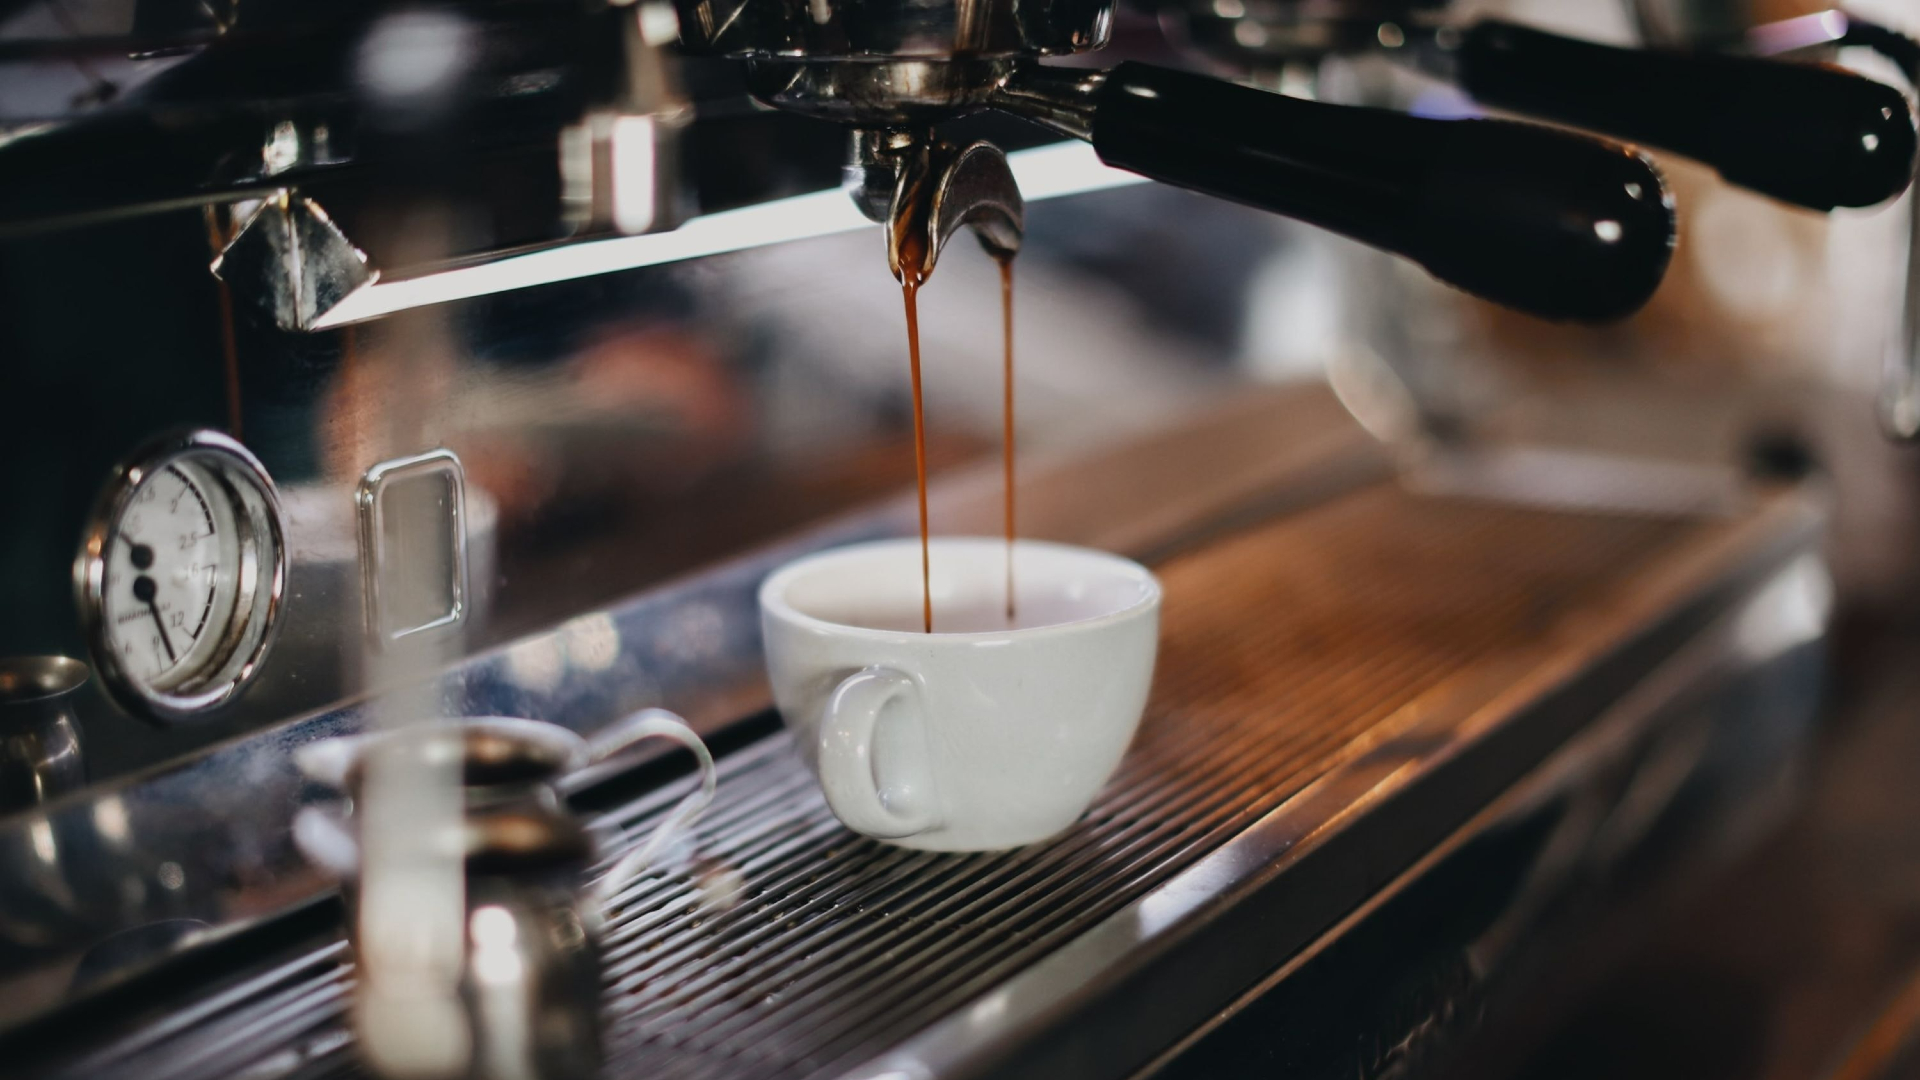 Doorbraak Altijd eigendom Lidl stunt met espressomachines waar écht lekkere koffie uitkomt